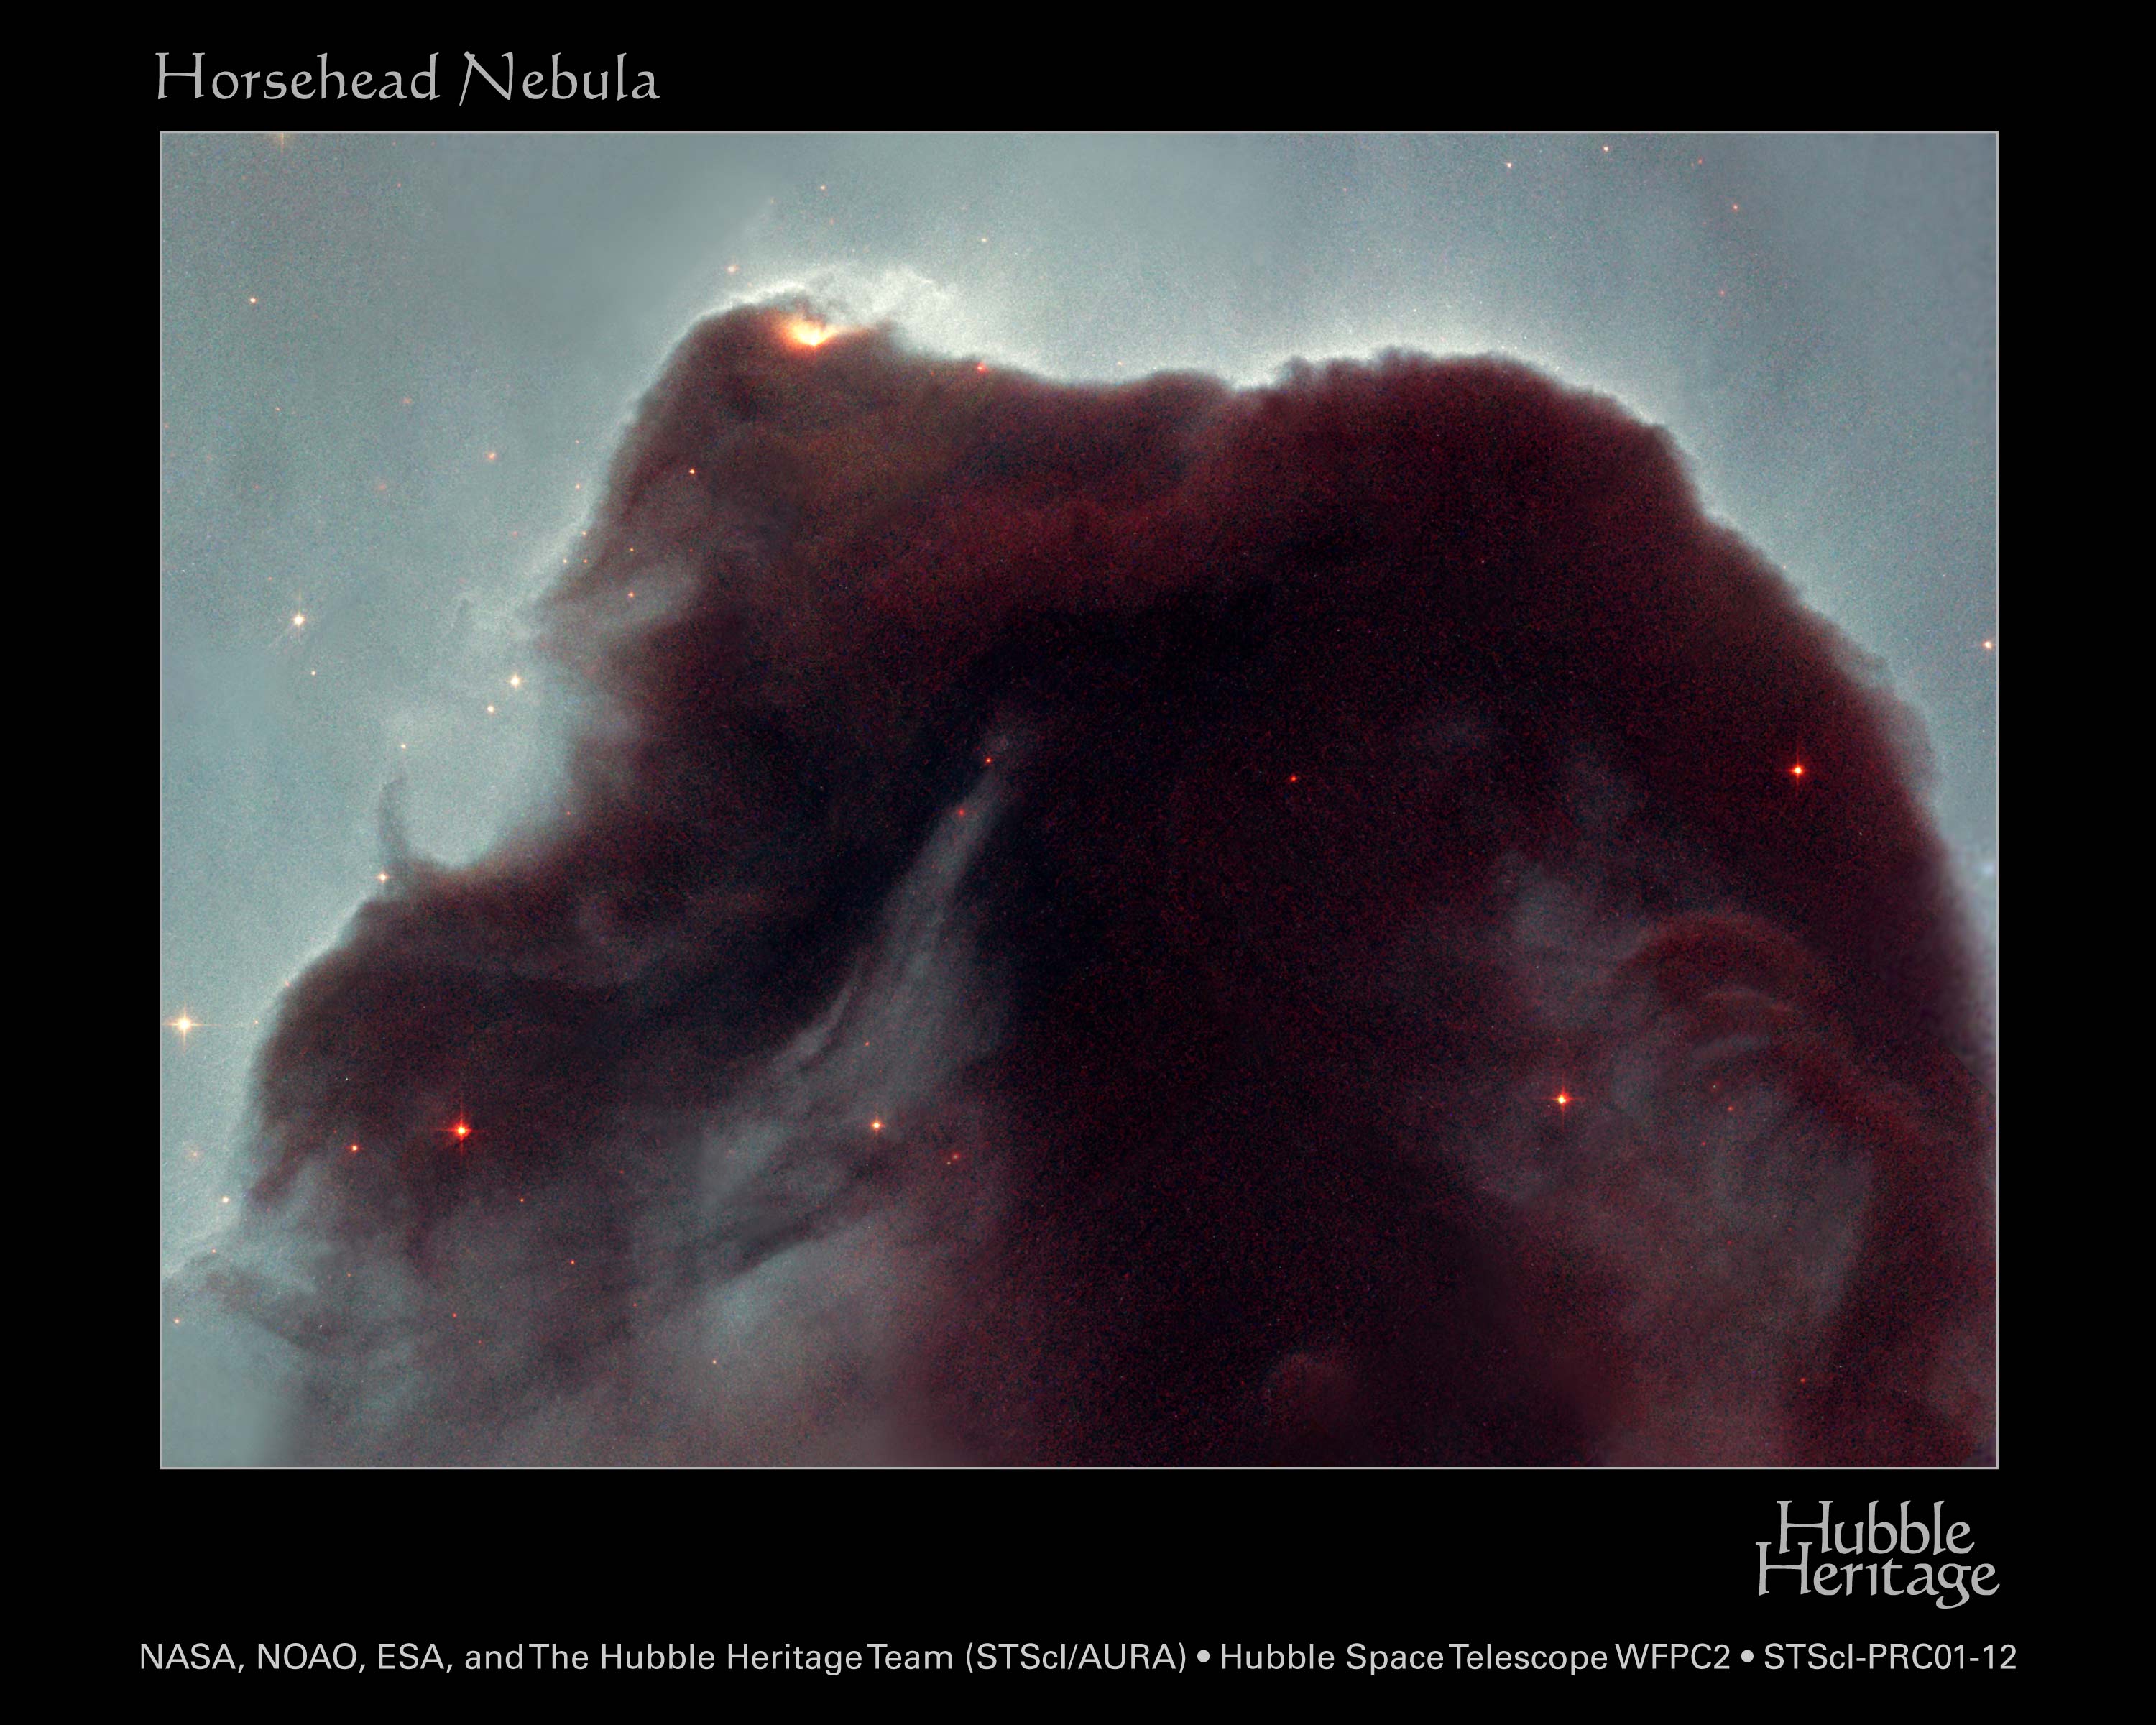 Horsehead Nebula in space.